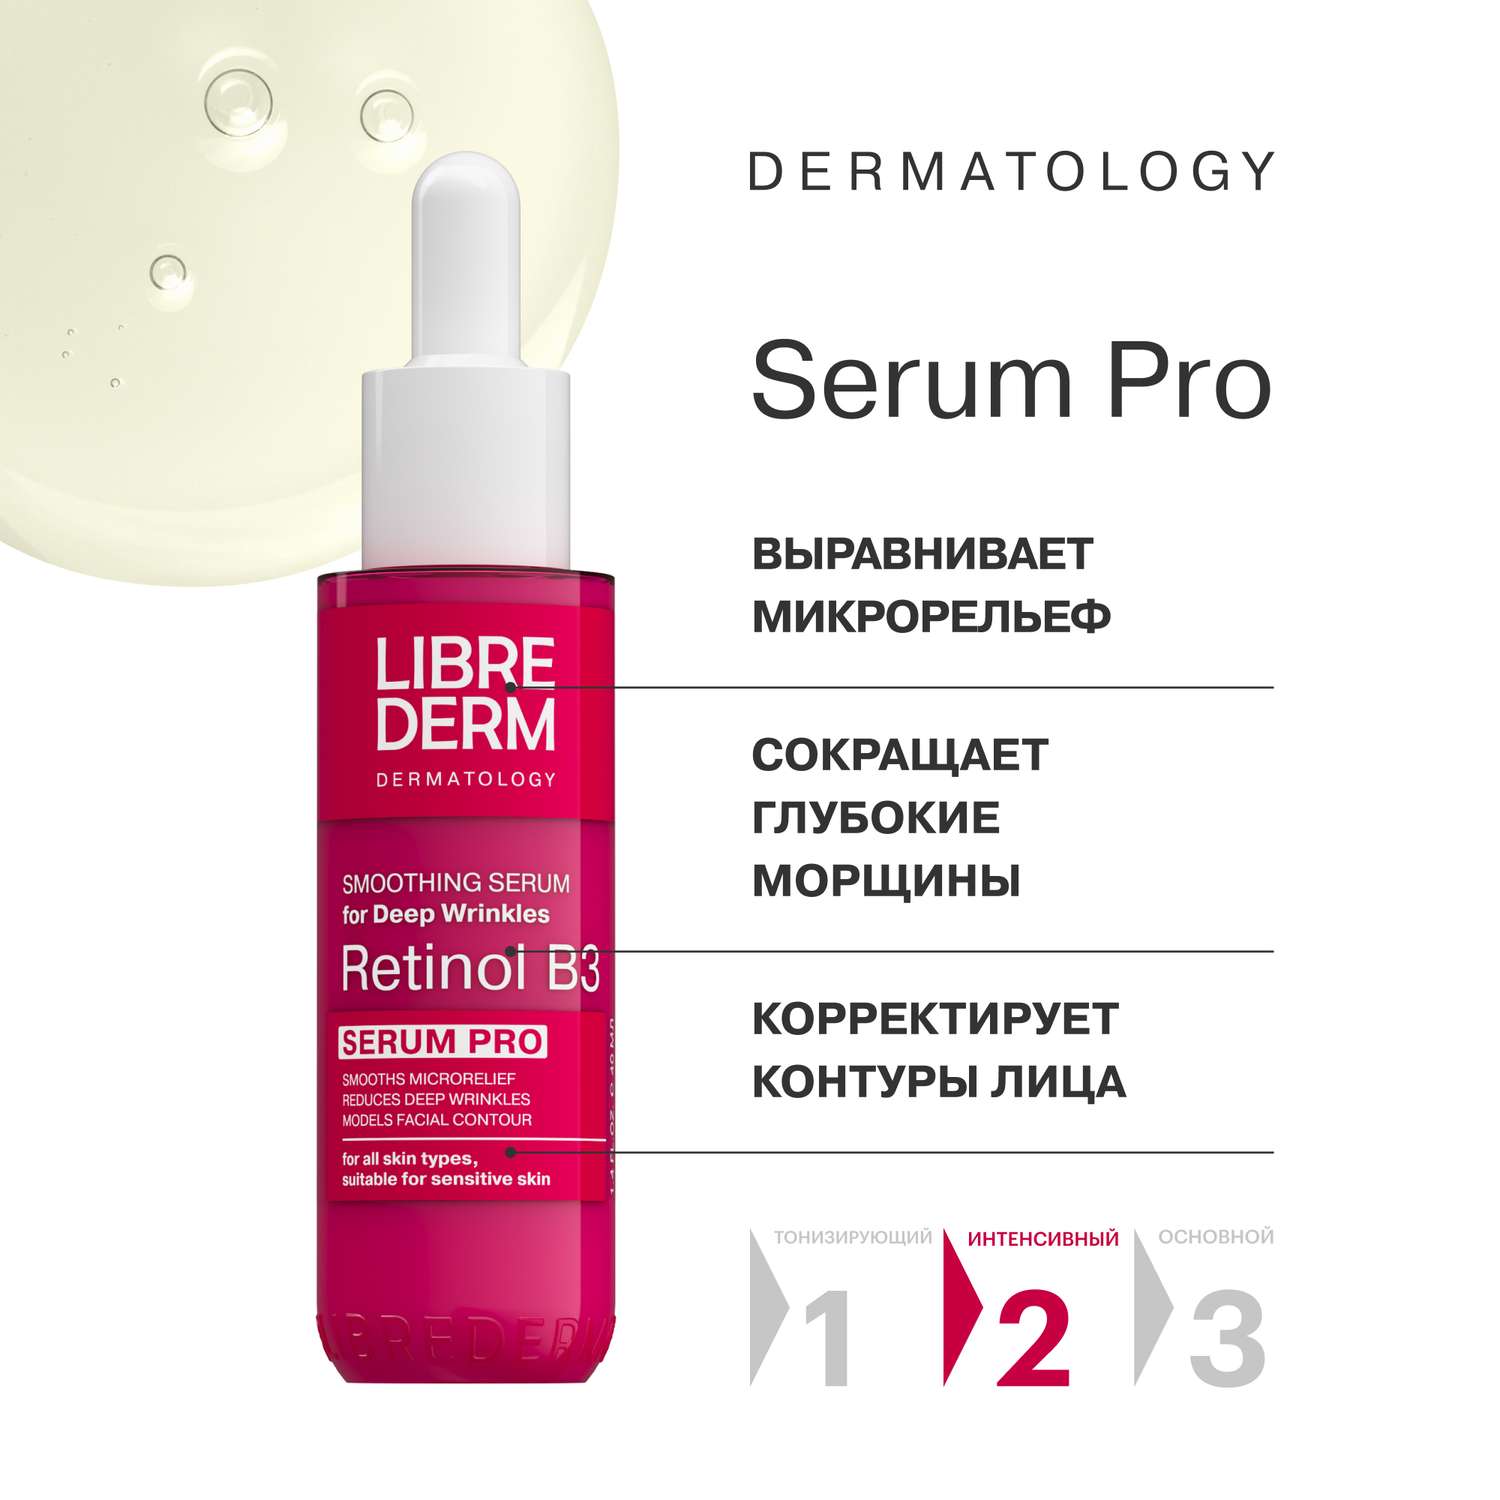 Сыворотка для лица Librederm serum pro интенсивная против морщин Retinol B3 40 мл - фото 3